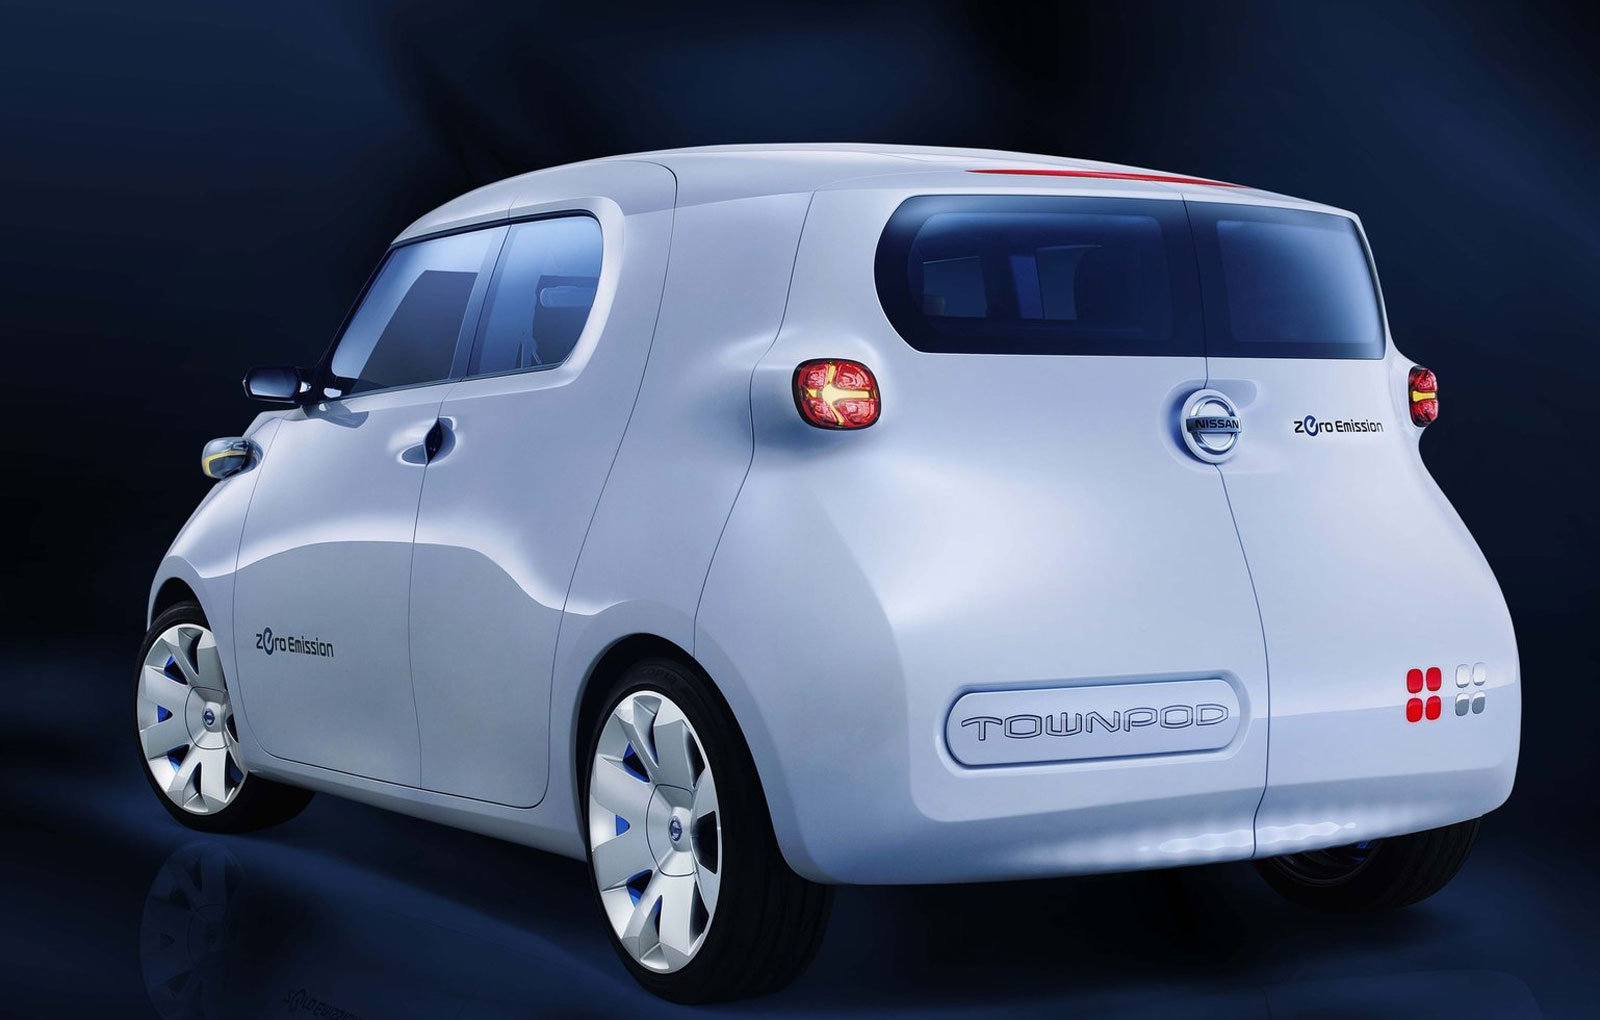 Nissan Townpod concept